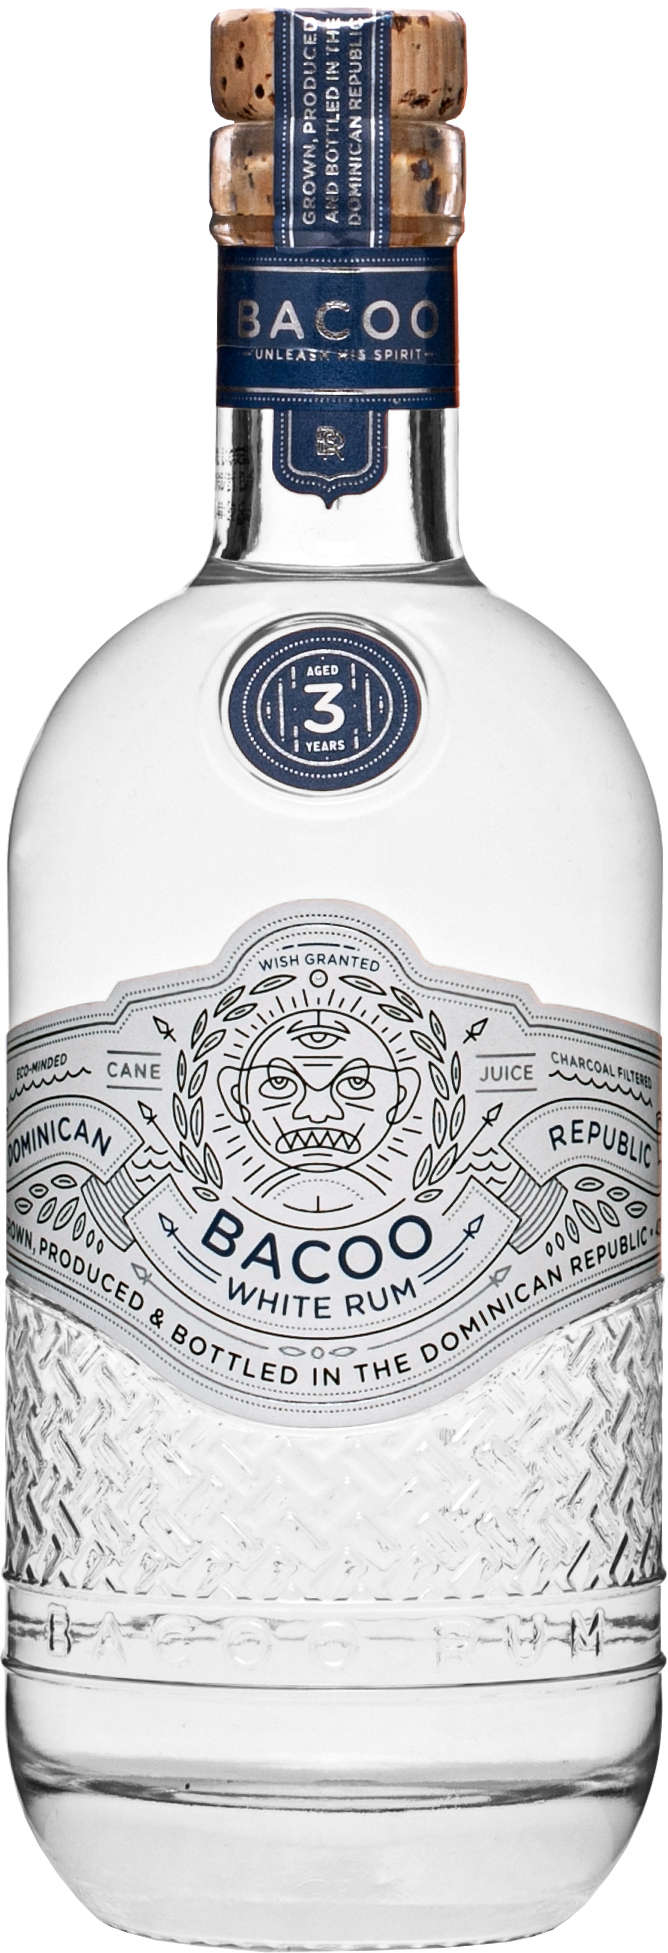 Bacoo 3 letý White rum 43% 0,7l (čistá fľaša)